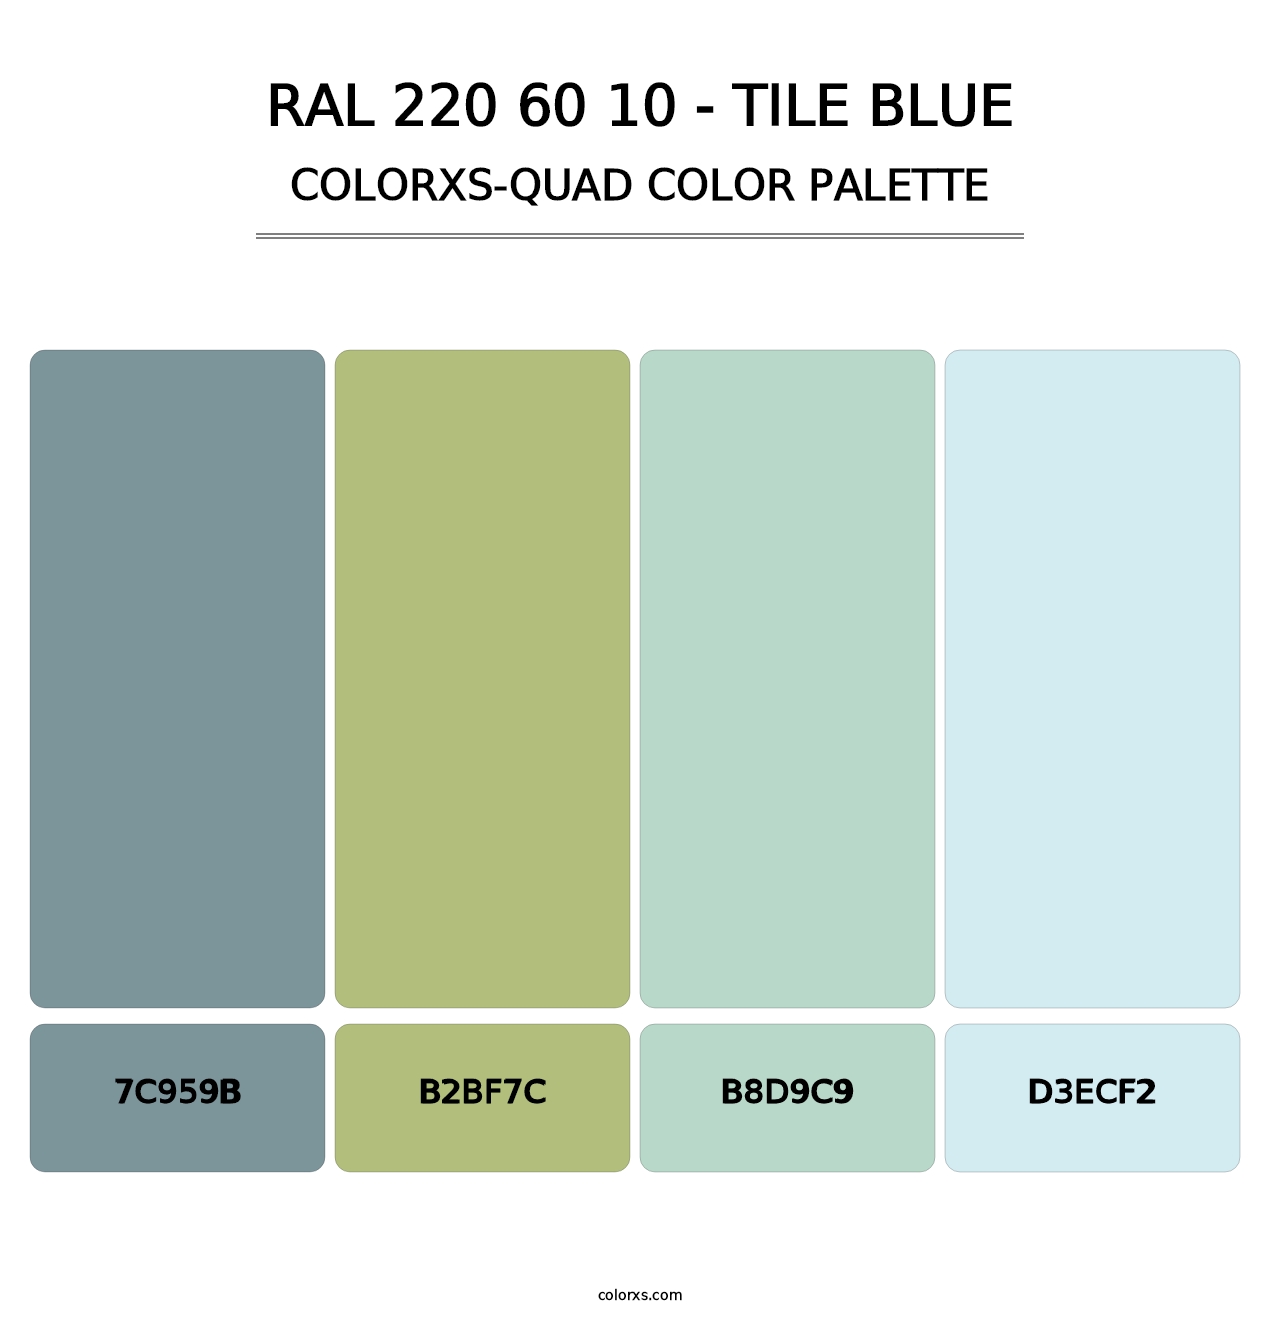 RAL 220 60 10 - Tile Blue - Colorxs Quad Palette